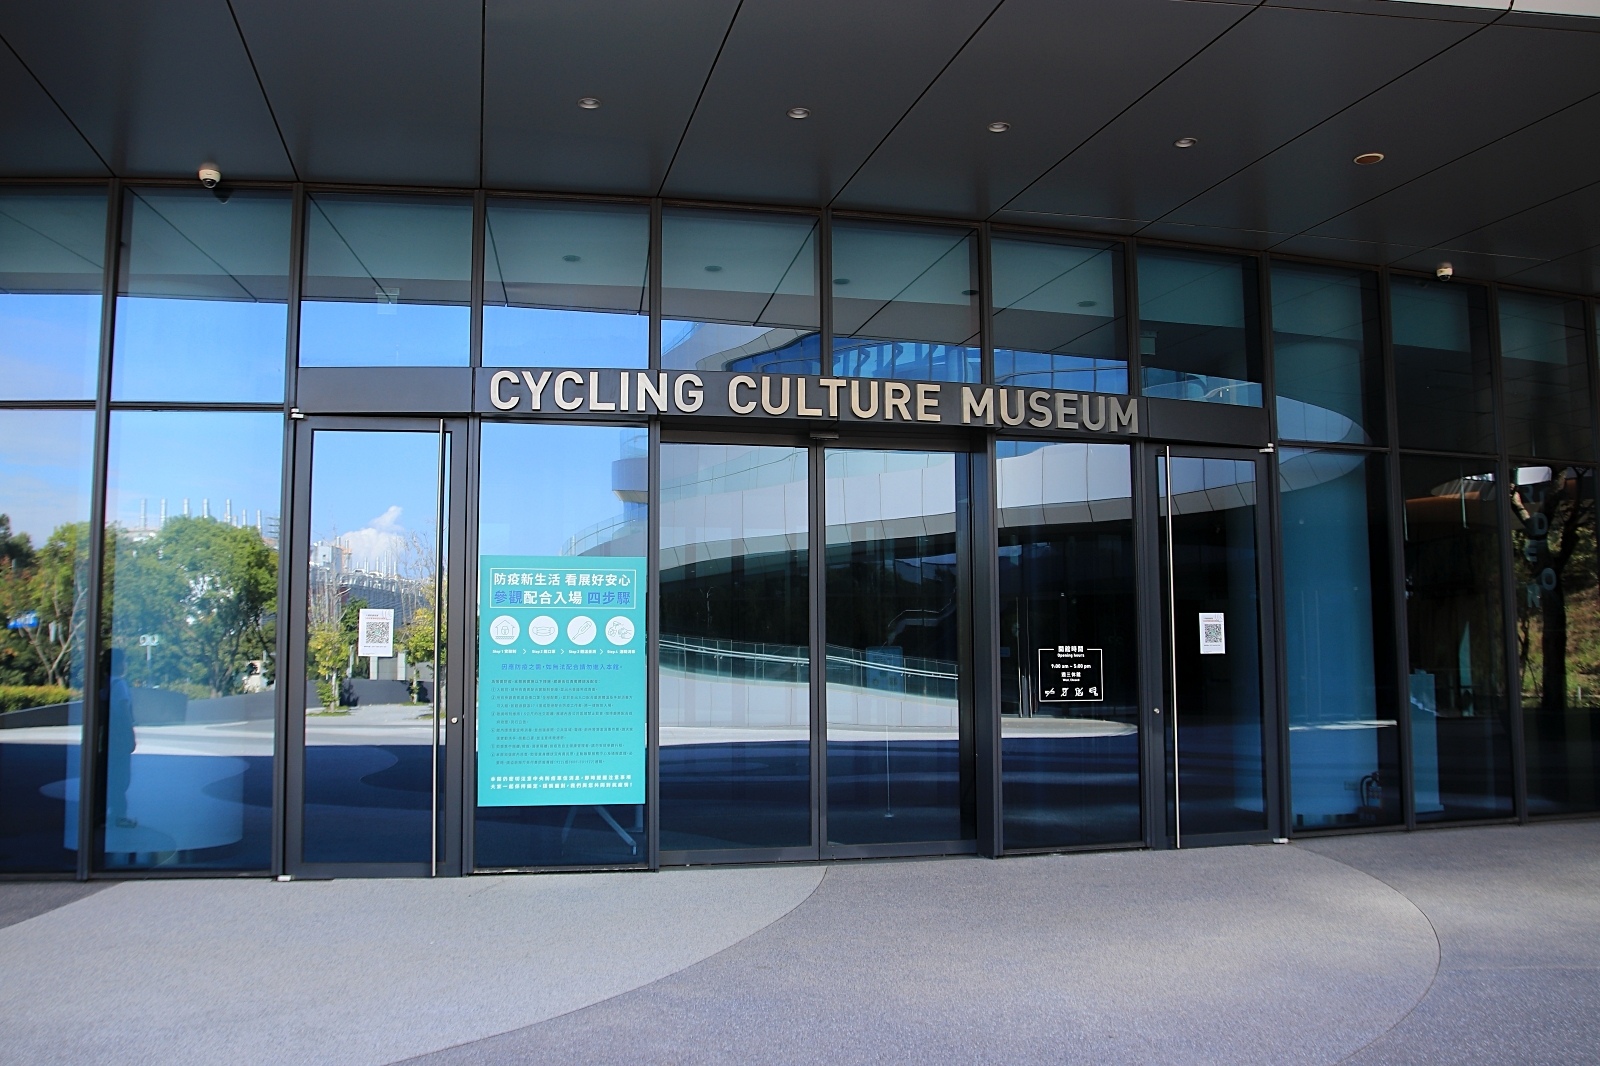 自行車文化探索館入場門口